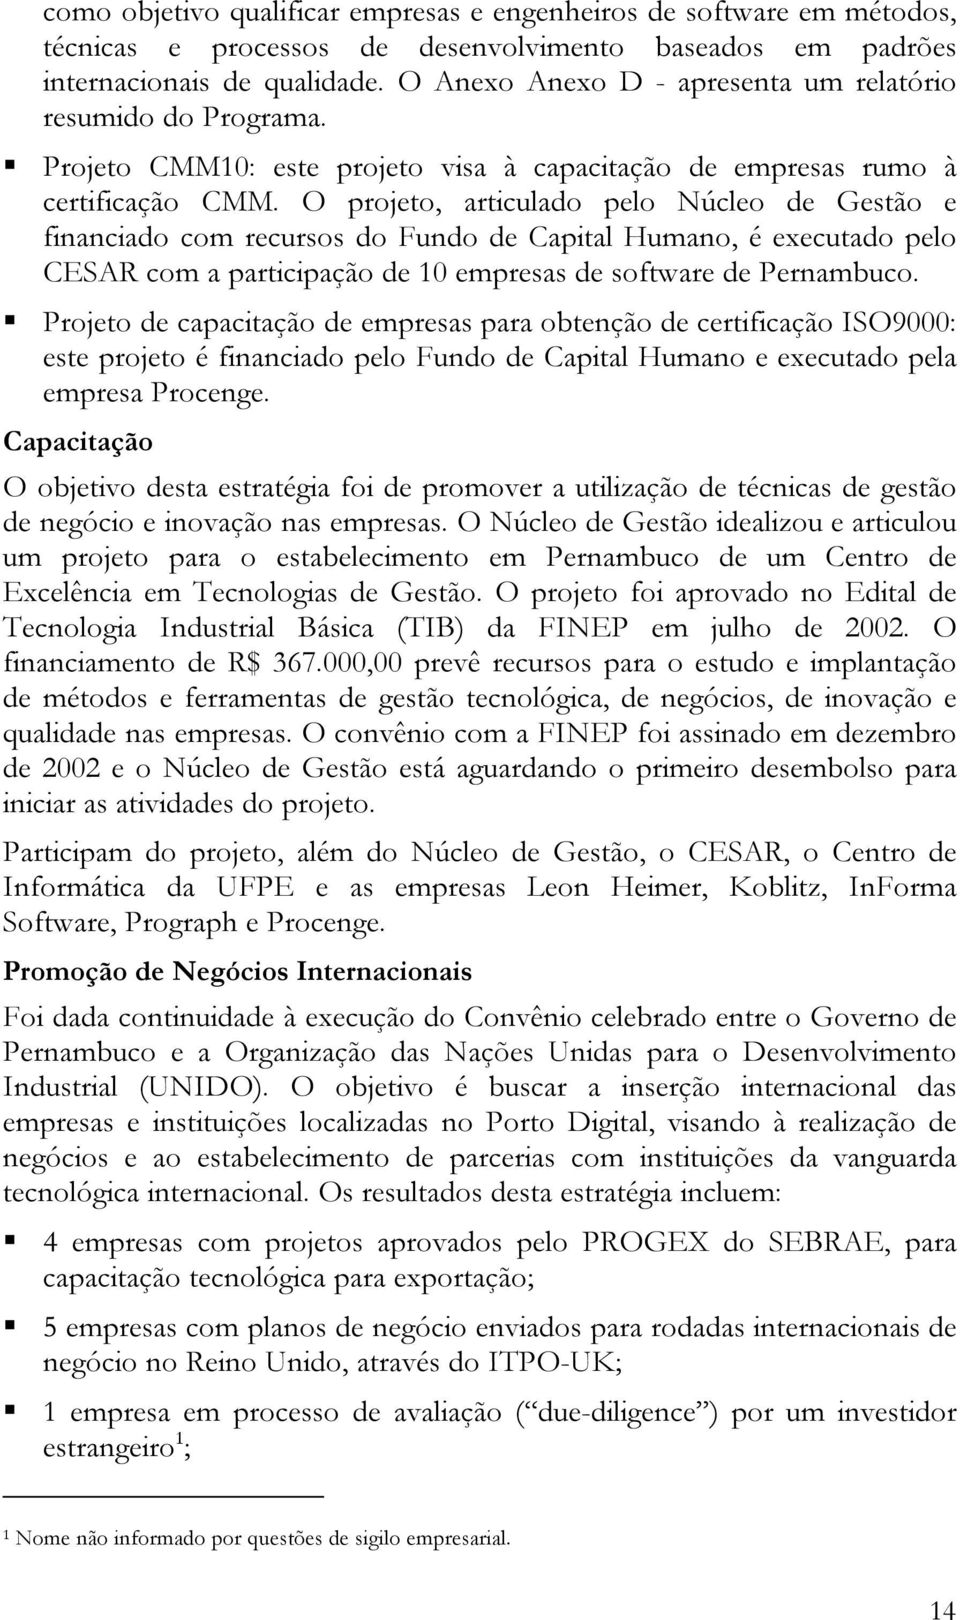 O projeto, articulado pelo Núcleo de Gestão e financiado com recursos do Fundo de Capital Humano, é executado pelo CESAR com a participação de 10 empresas de software de Pernambuco.